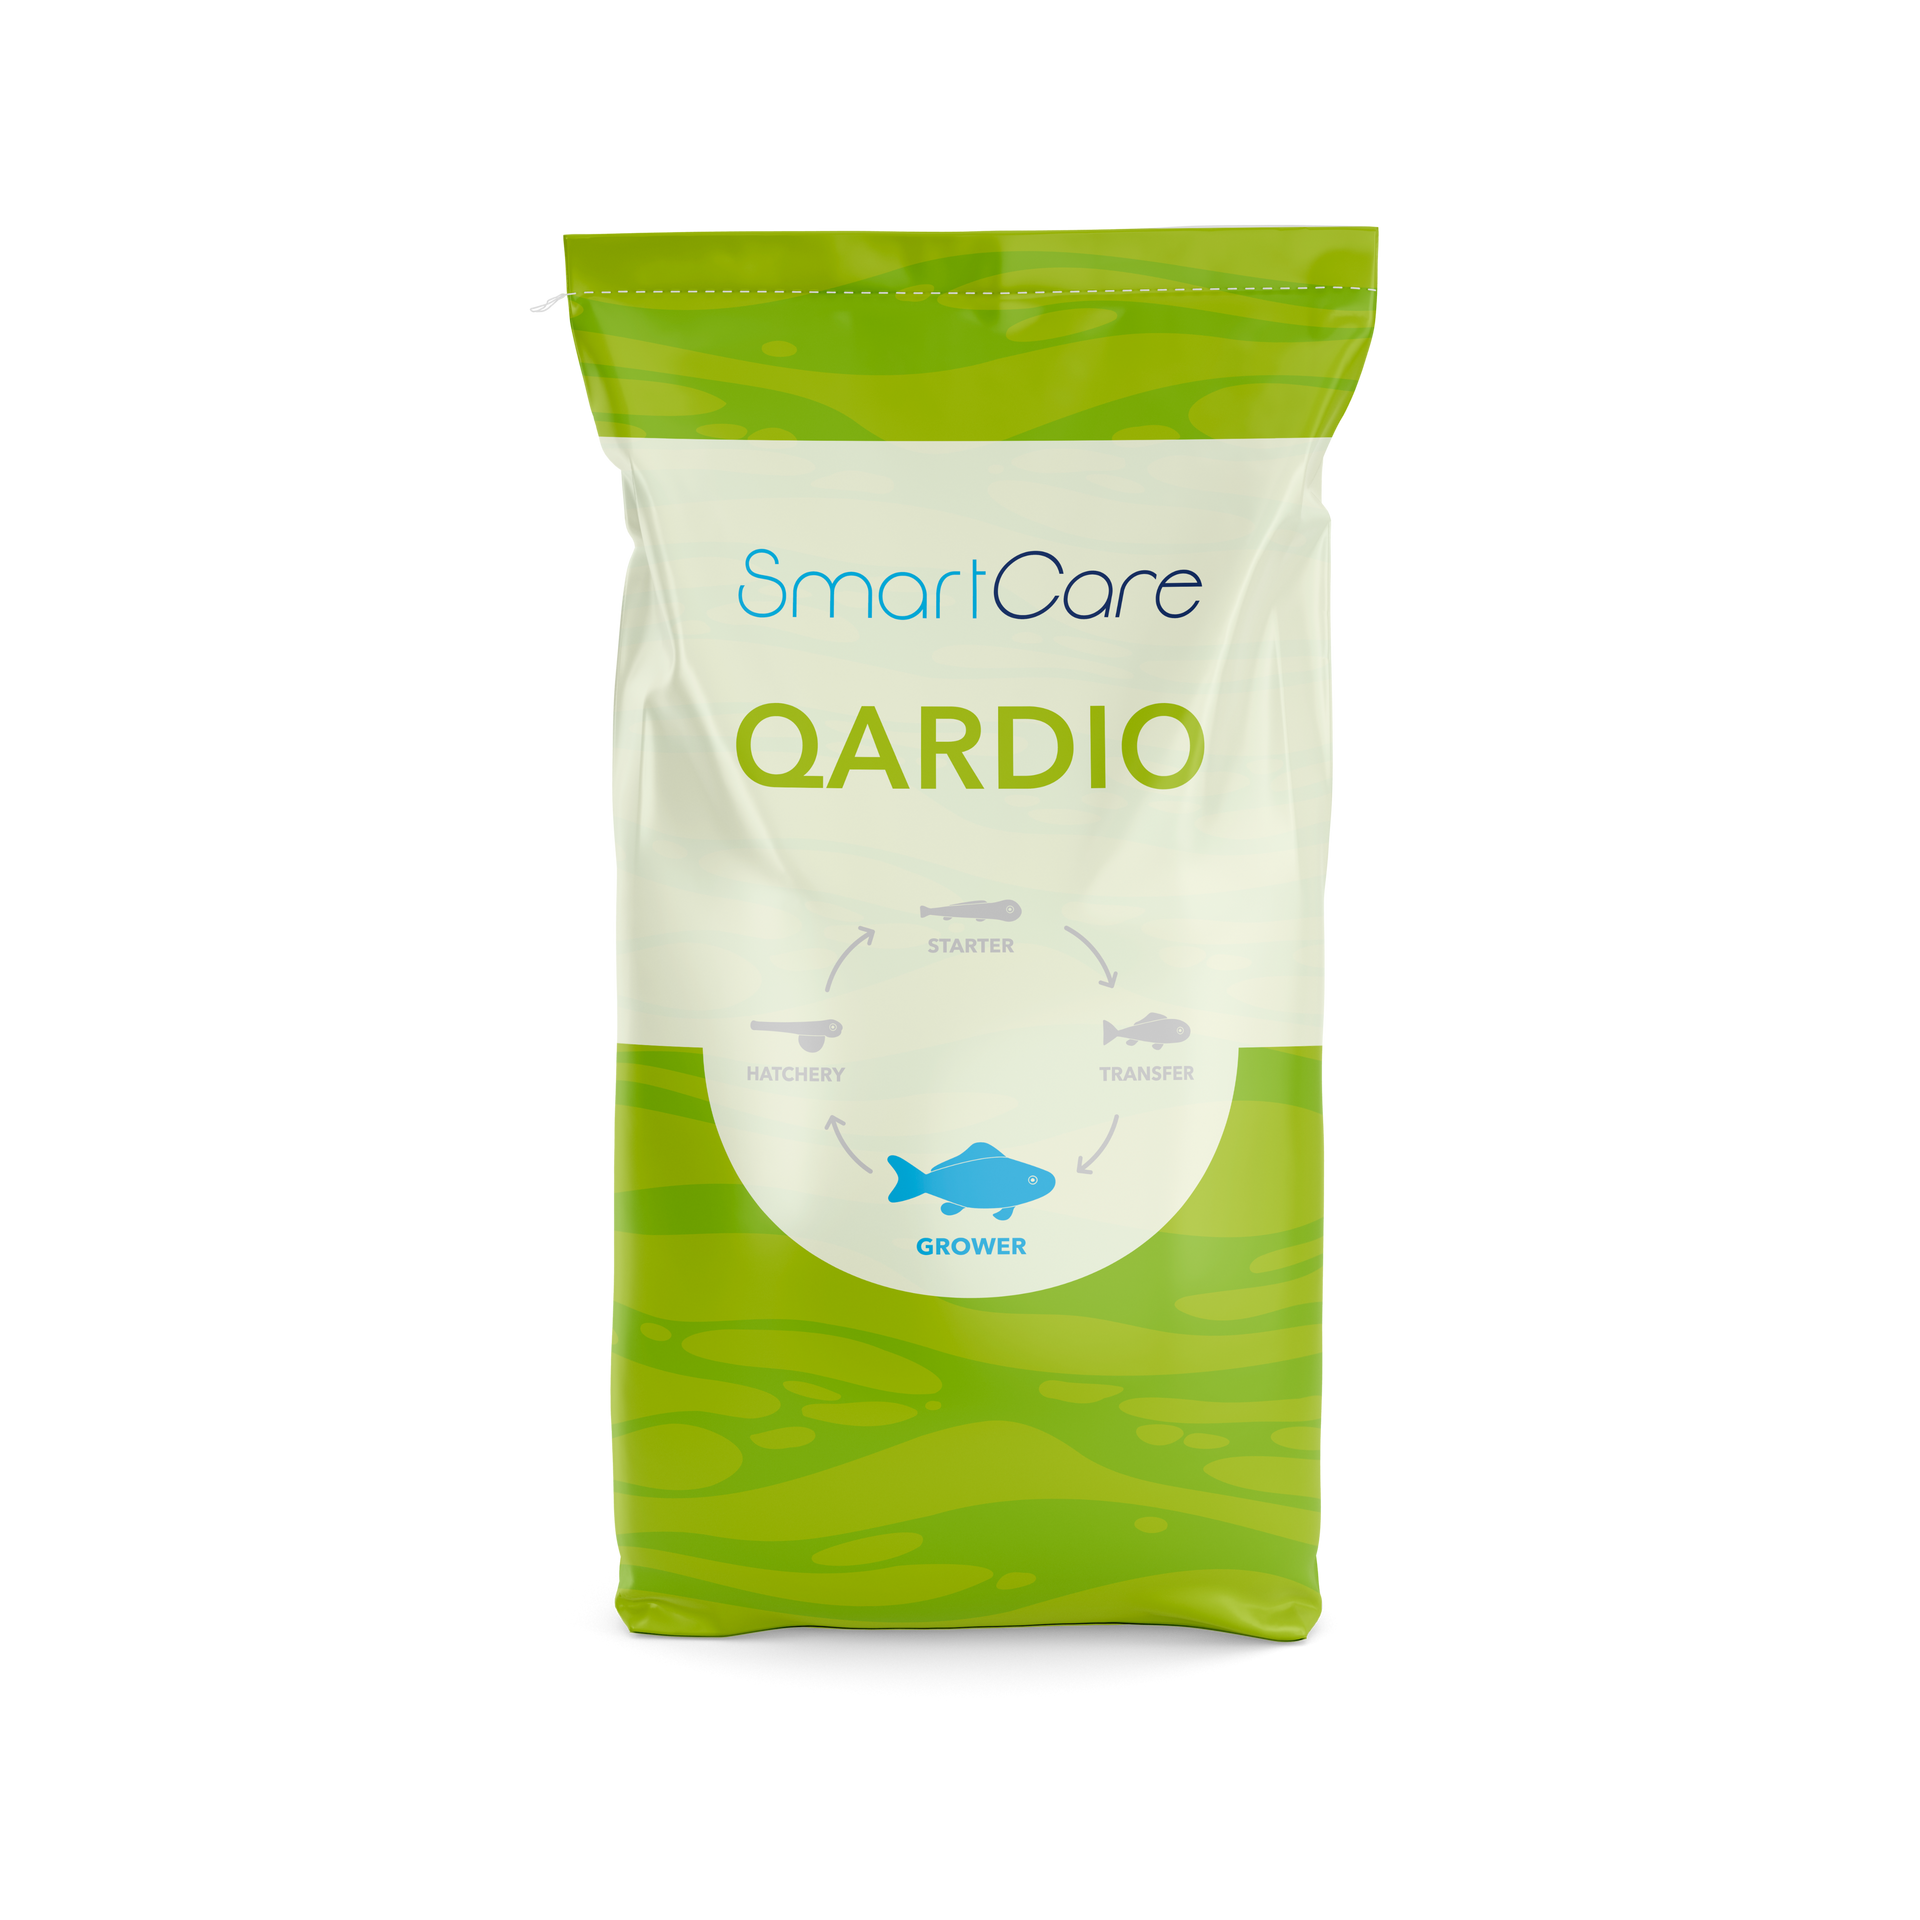 SmartCare Qardio health feed for Seabream